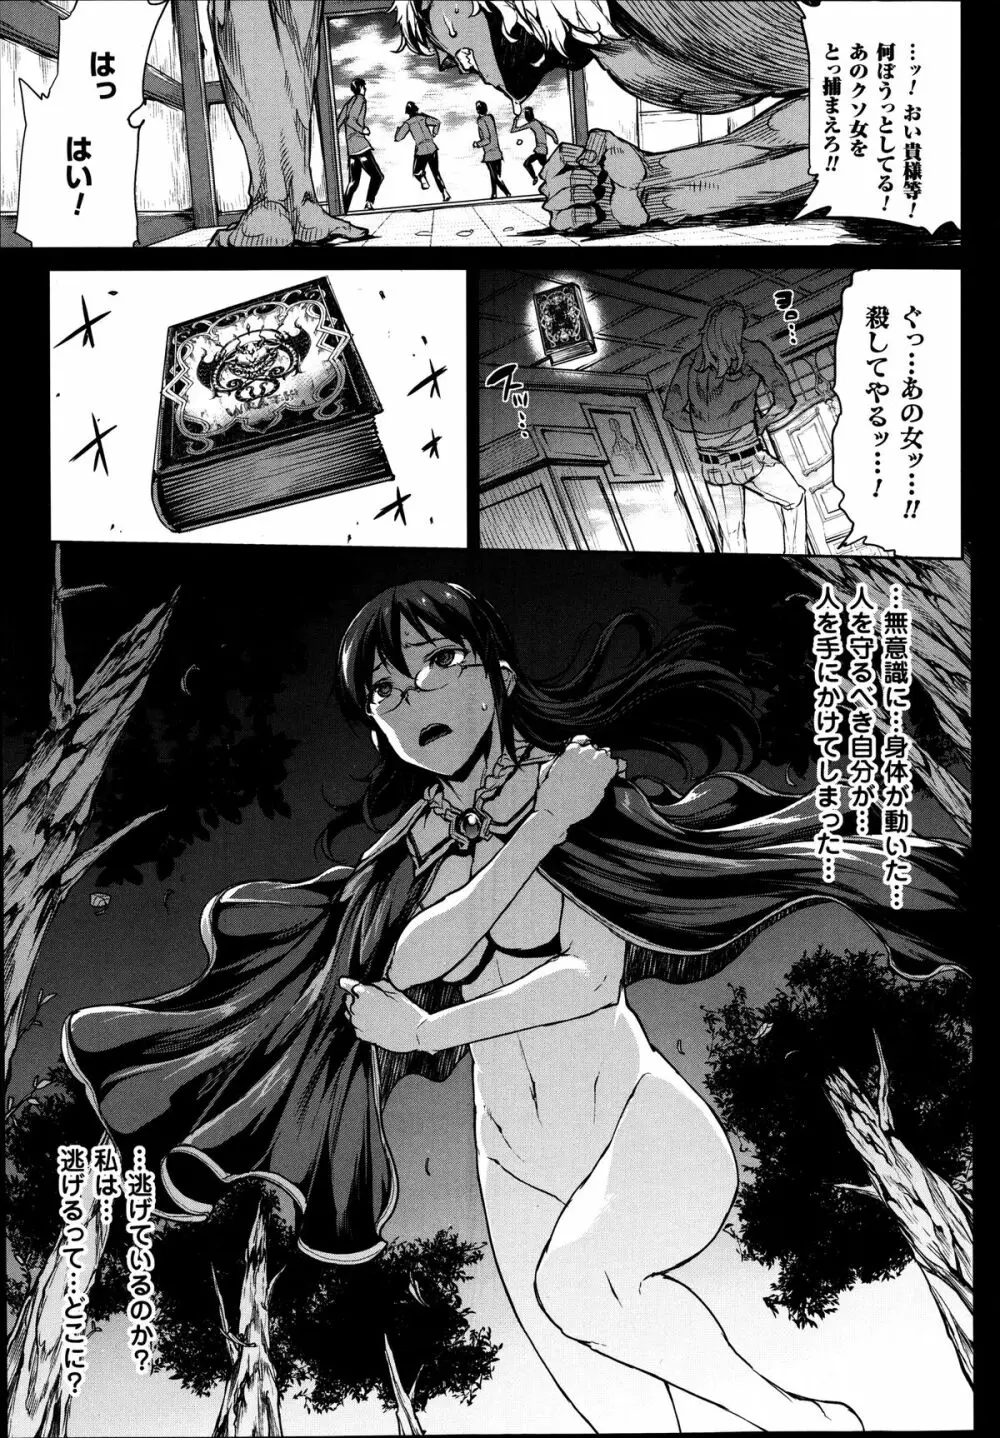 神曲のグリモワール―PANDRA saga 2nd story― 第7-12章 176ページ